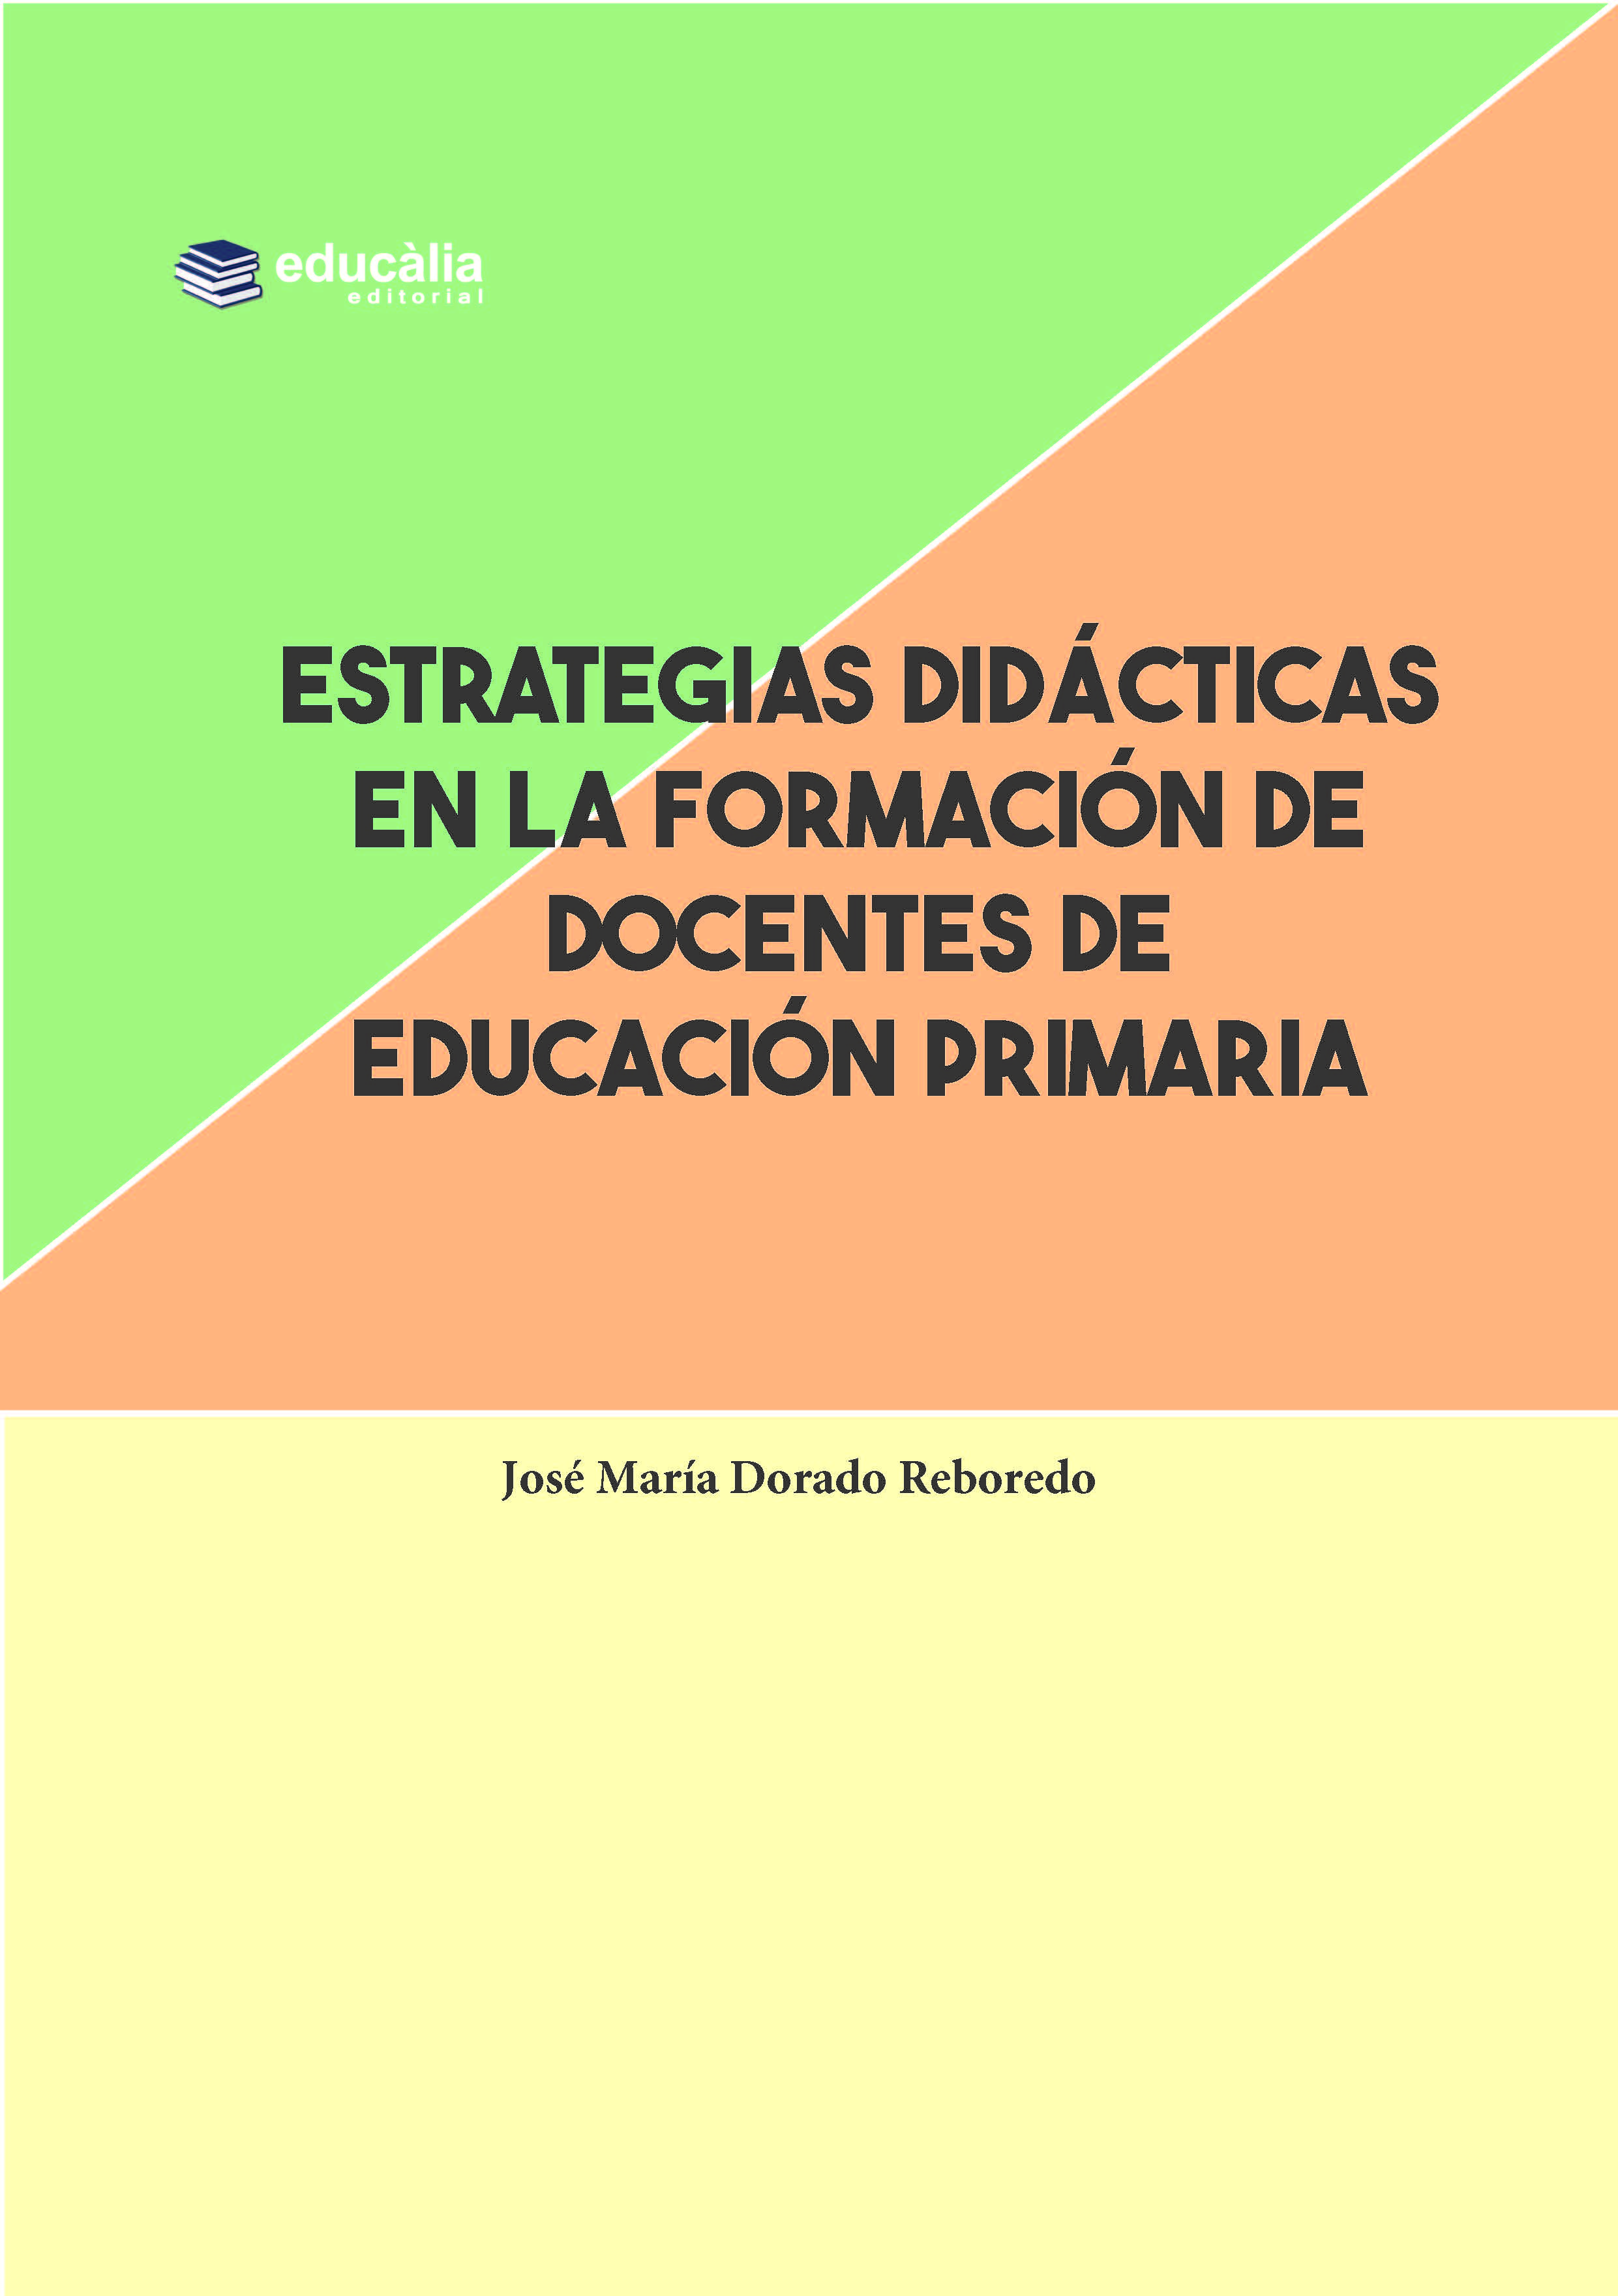 Estretegias didácticas en al formación de docentes de Educación Primaria